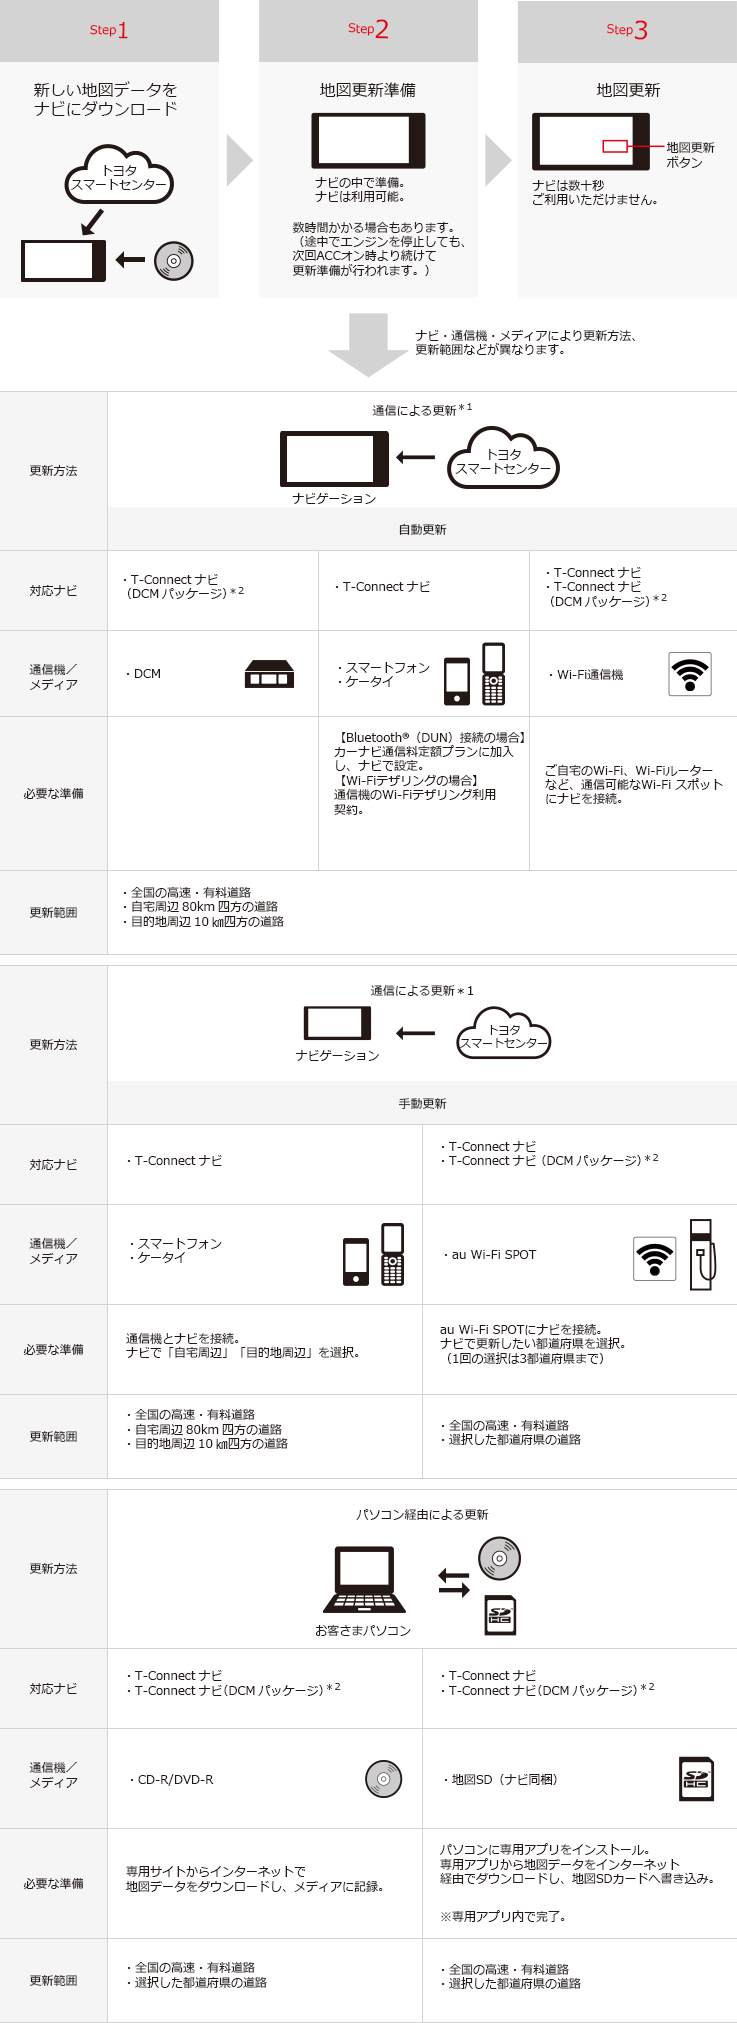 トヨタ アクセサリー カーナビ オーディオ データ更新情報について トヨタ自動車webサイト